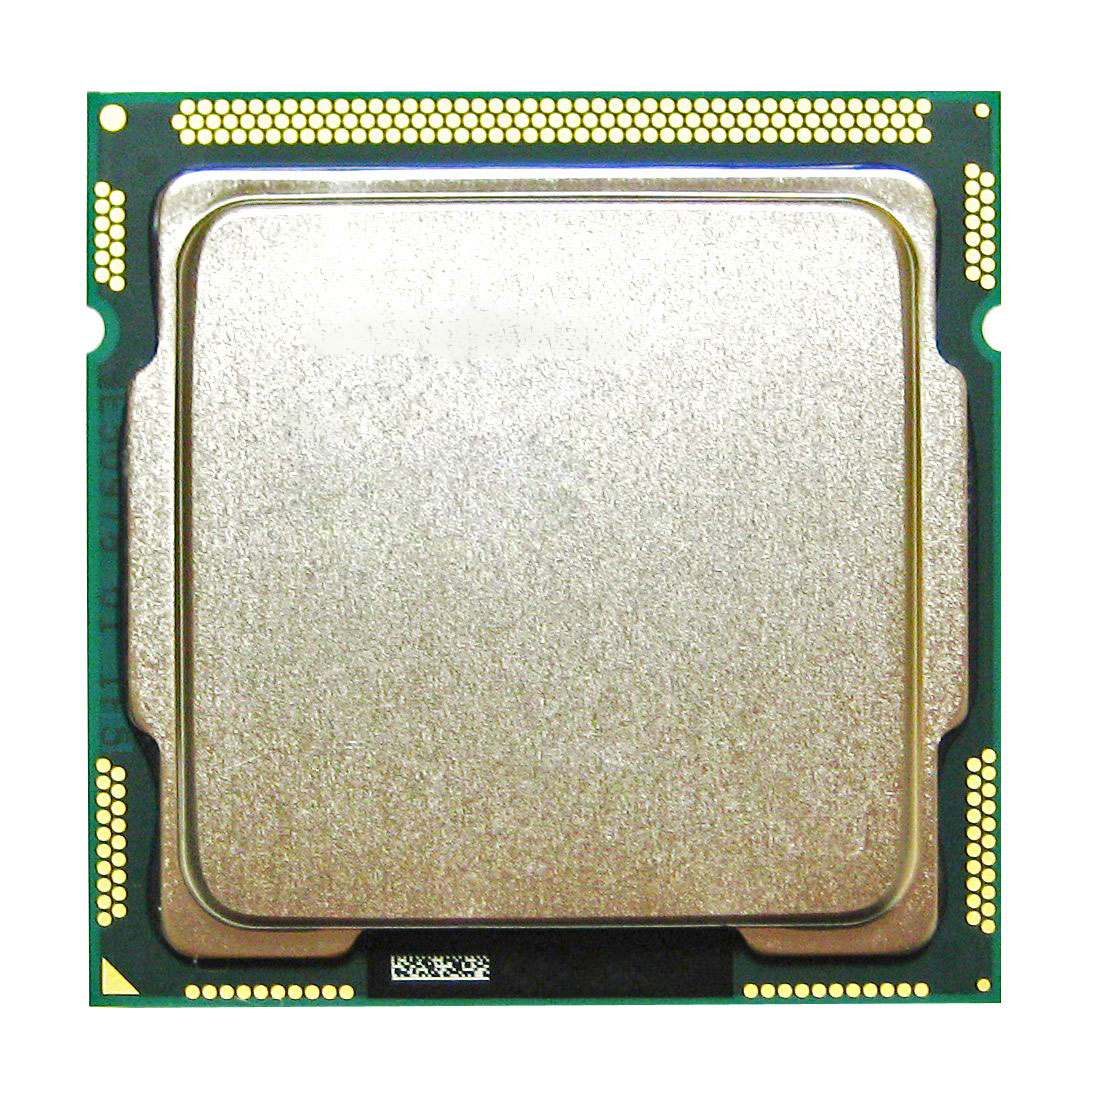 SR00A Intel Core i5-2500T Quad Core 2.30GHz 5.00GT/s DMI 6MB L3 Cache Socket LGA1155 Desktop Processor